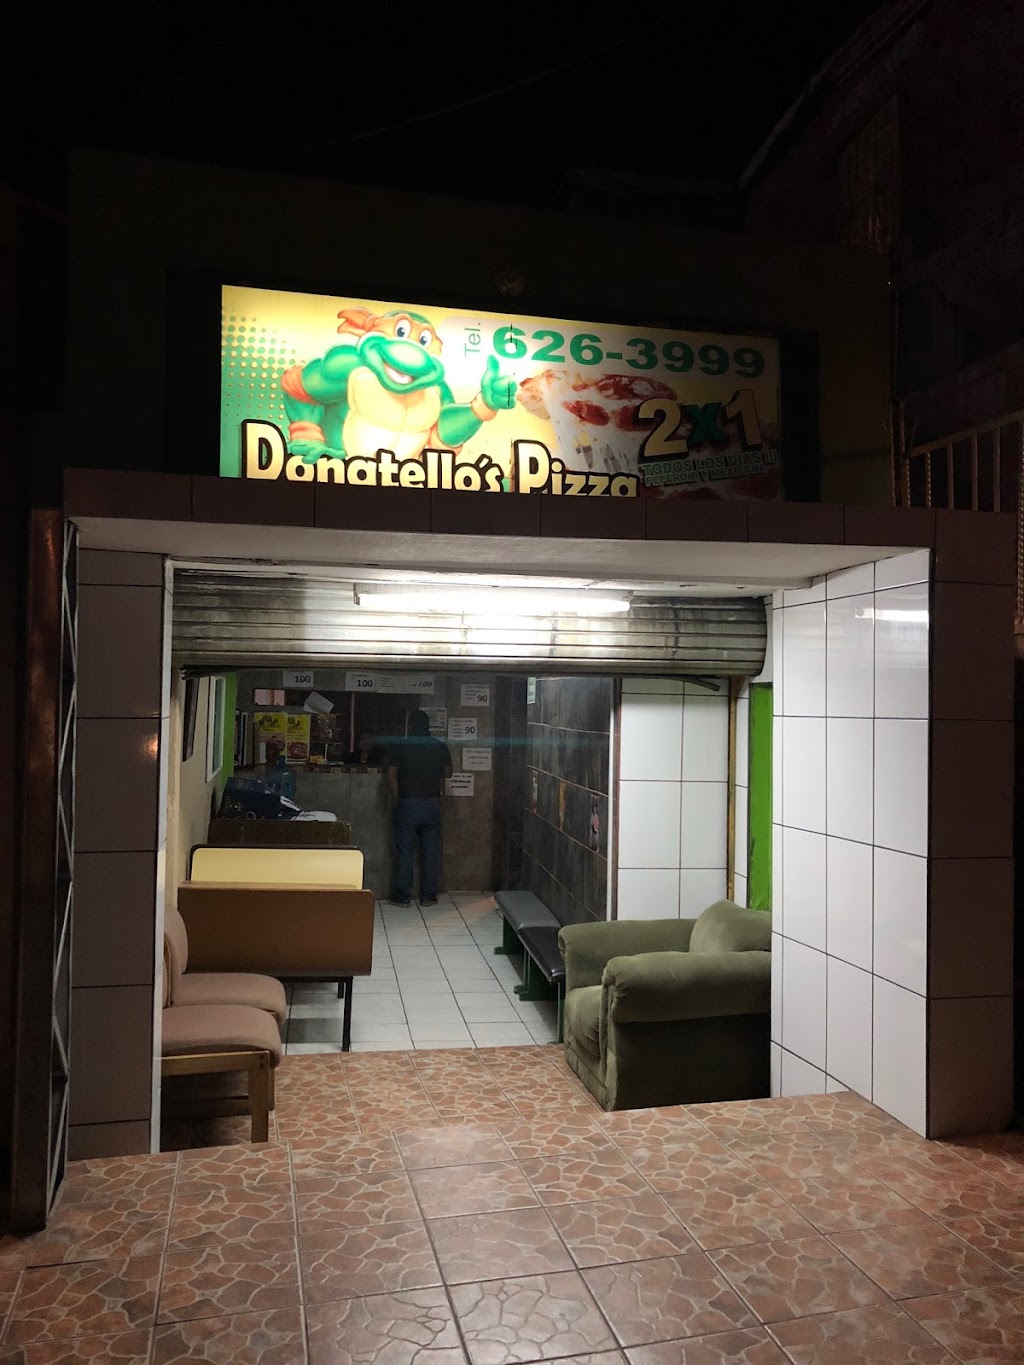 Donatellos Pizza | Avenida reforma #9001 A un lado de abarrrotes los Jesuses, Av. Paseo Reforma, Reforma, 22680 Tijuana, B.C., Mexico | Phone: 664 626 3999